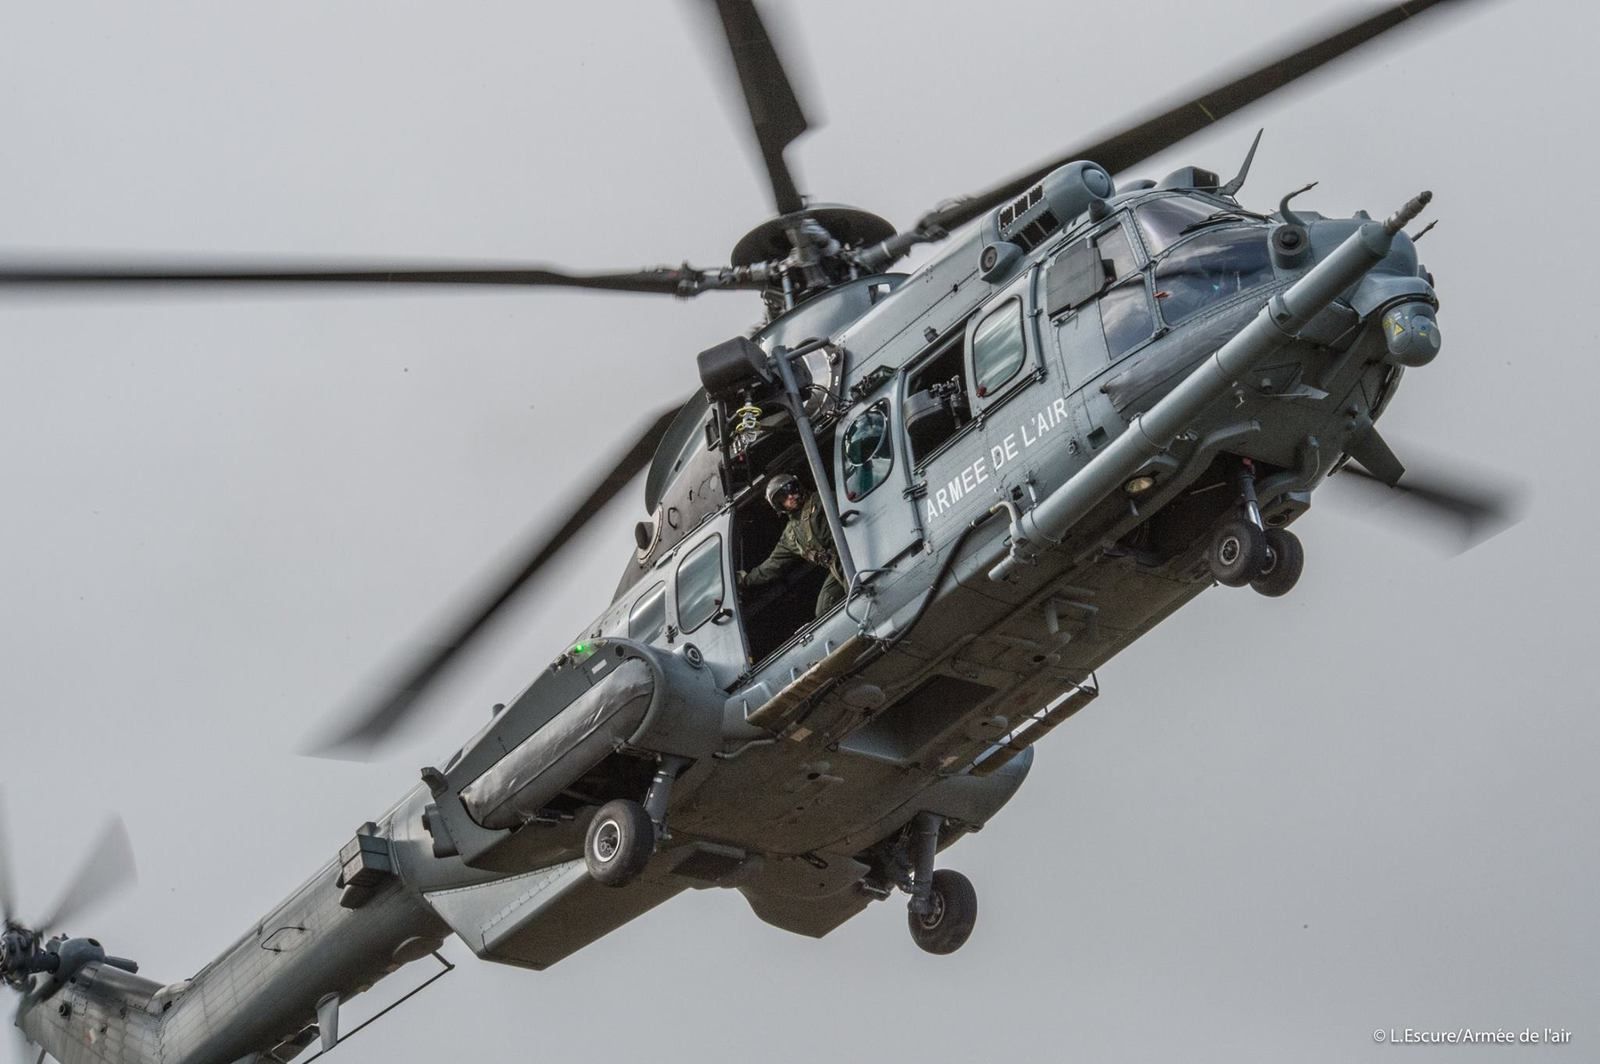 Exercice SALAMANDRE : Les Caracal et HH-60G Pave Hawk de l'USAF s'entraînent ensemble aux missions CSAR